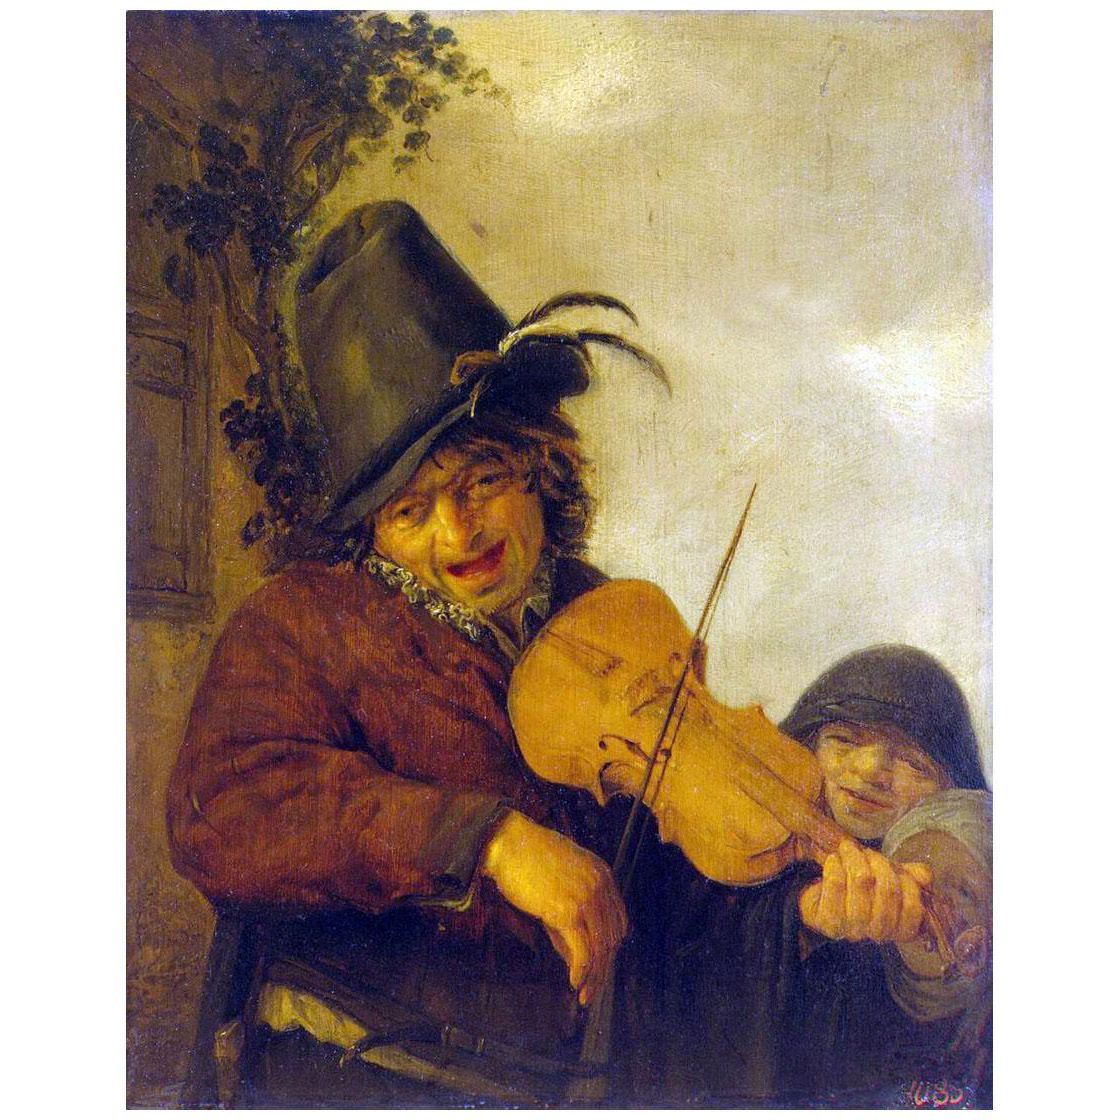 Adriaen van Ostade. Violinist with Two Children. 1648. Hermitage Museum